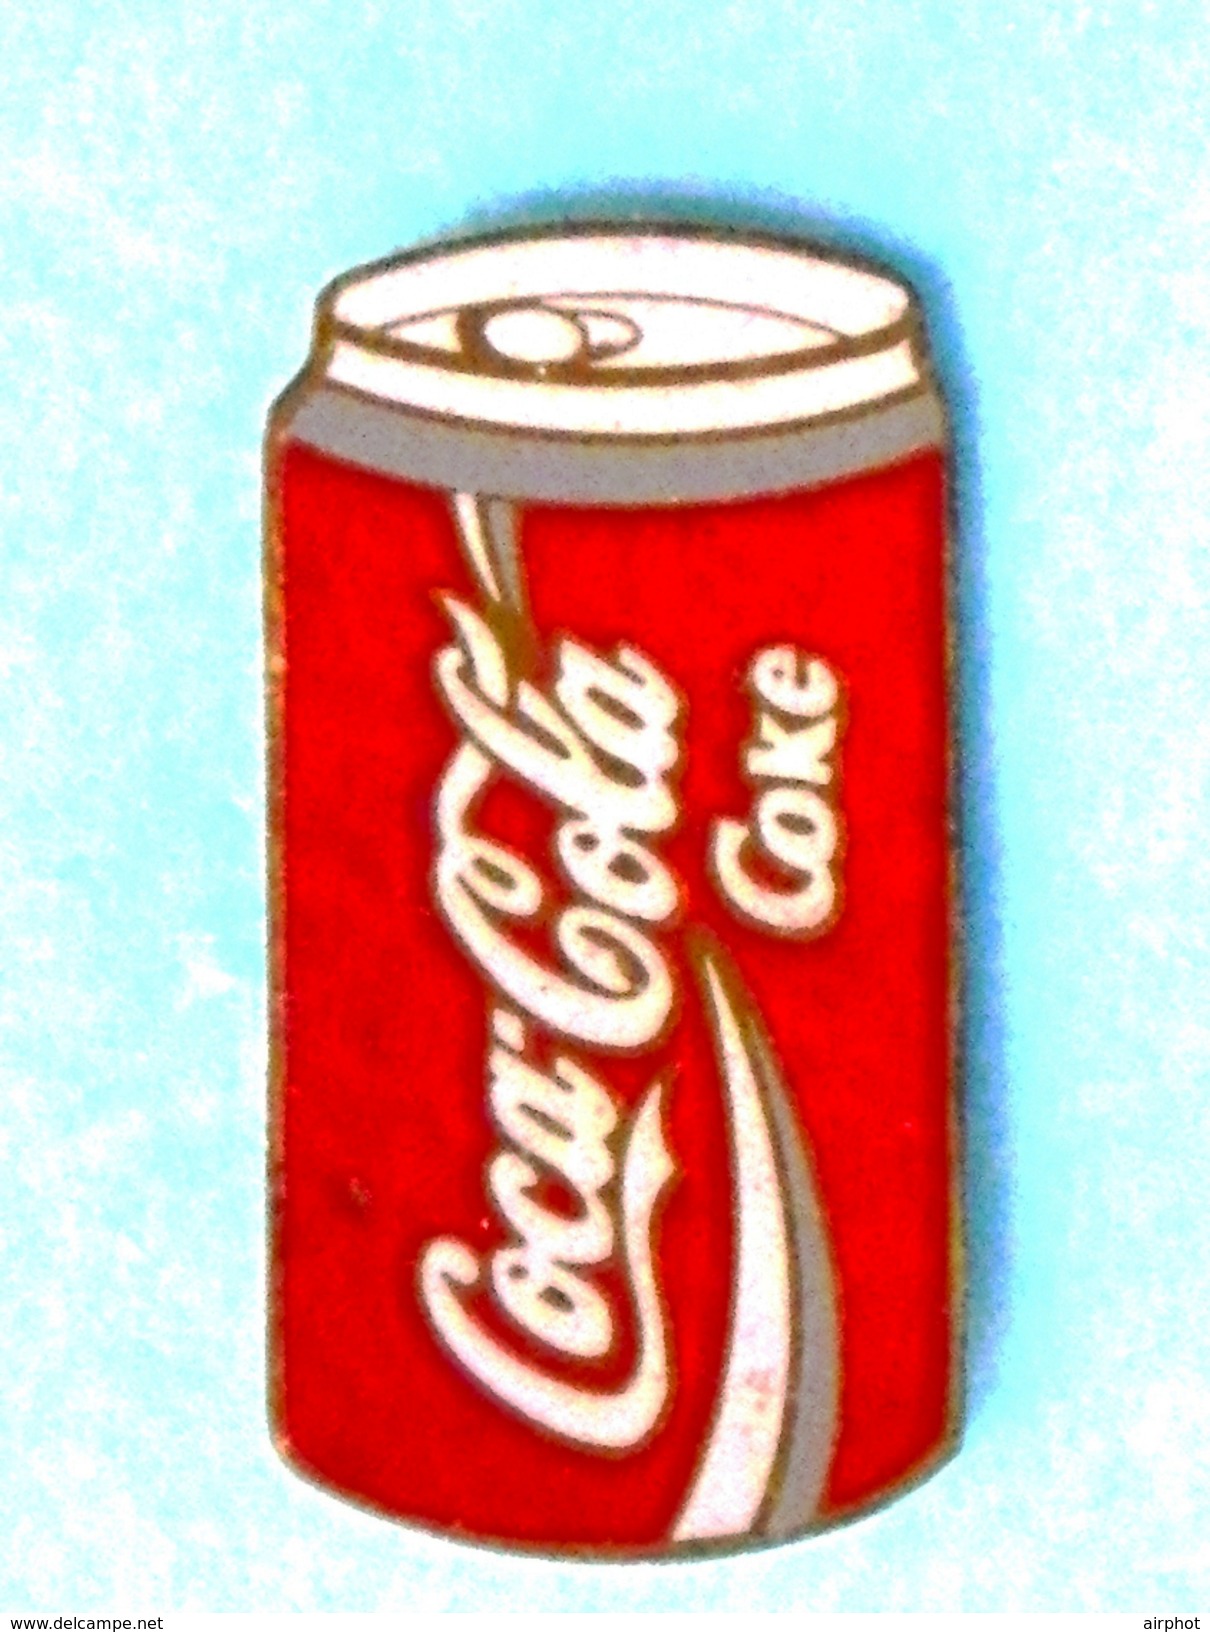 Pin's Canette COCA COLA - Coca-Cola